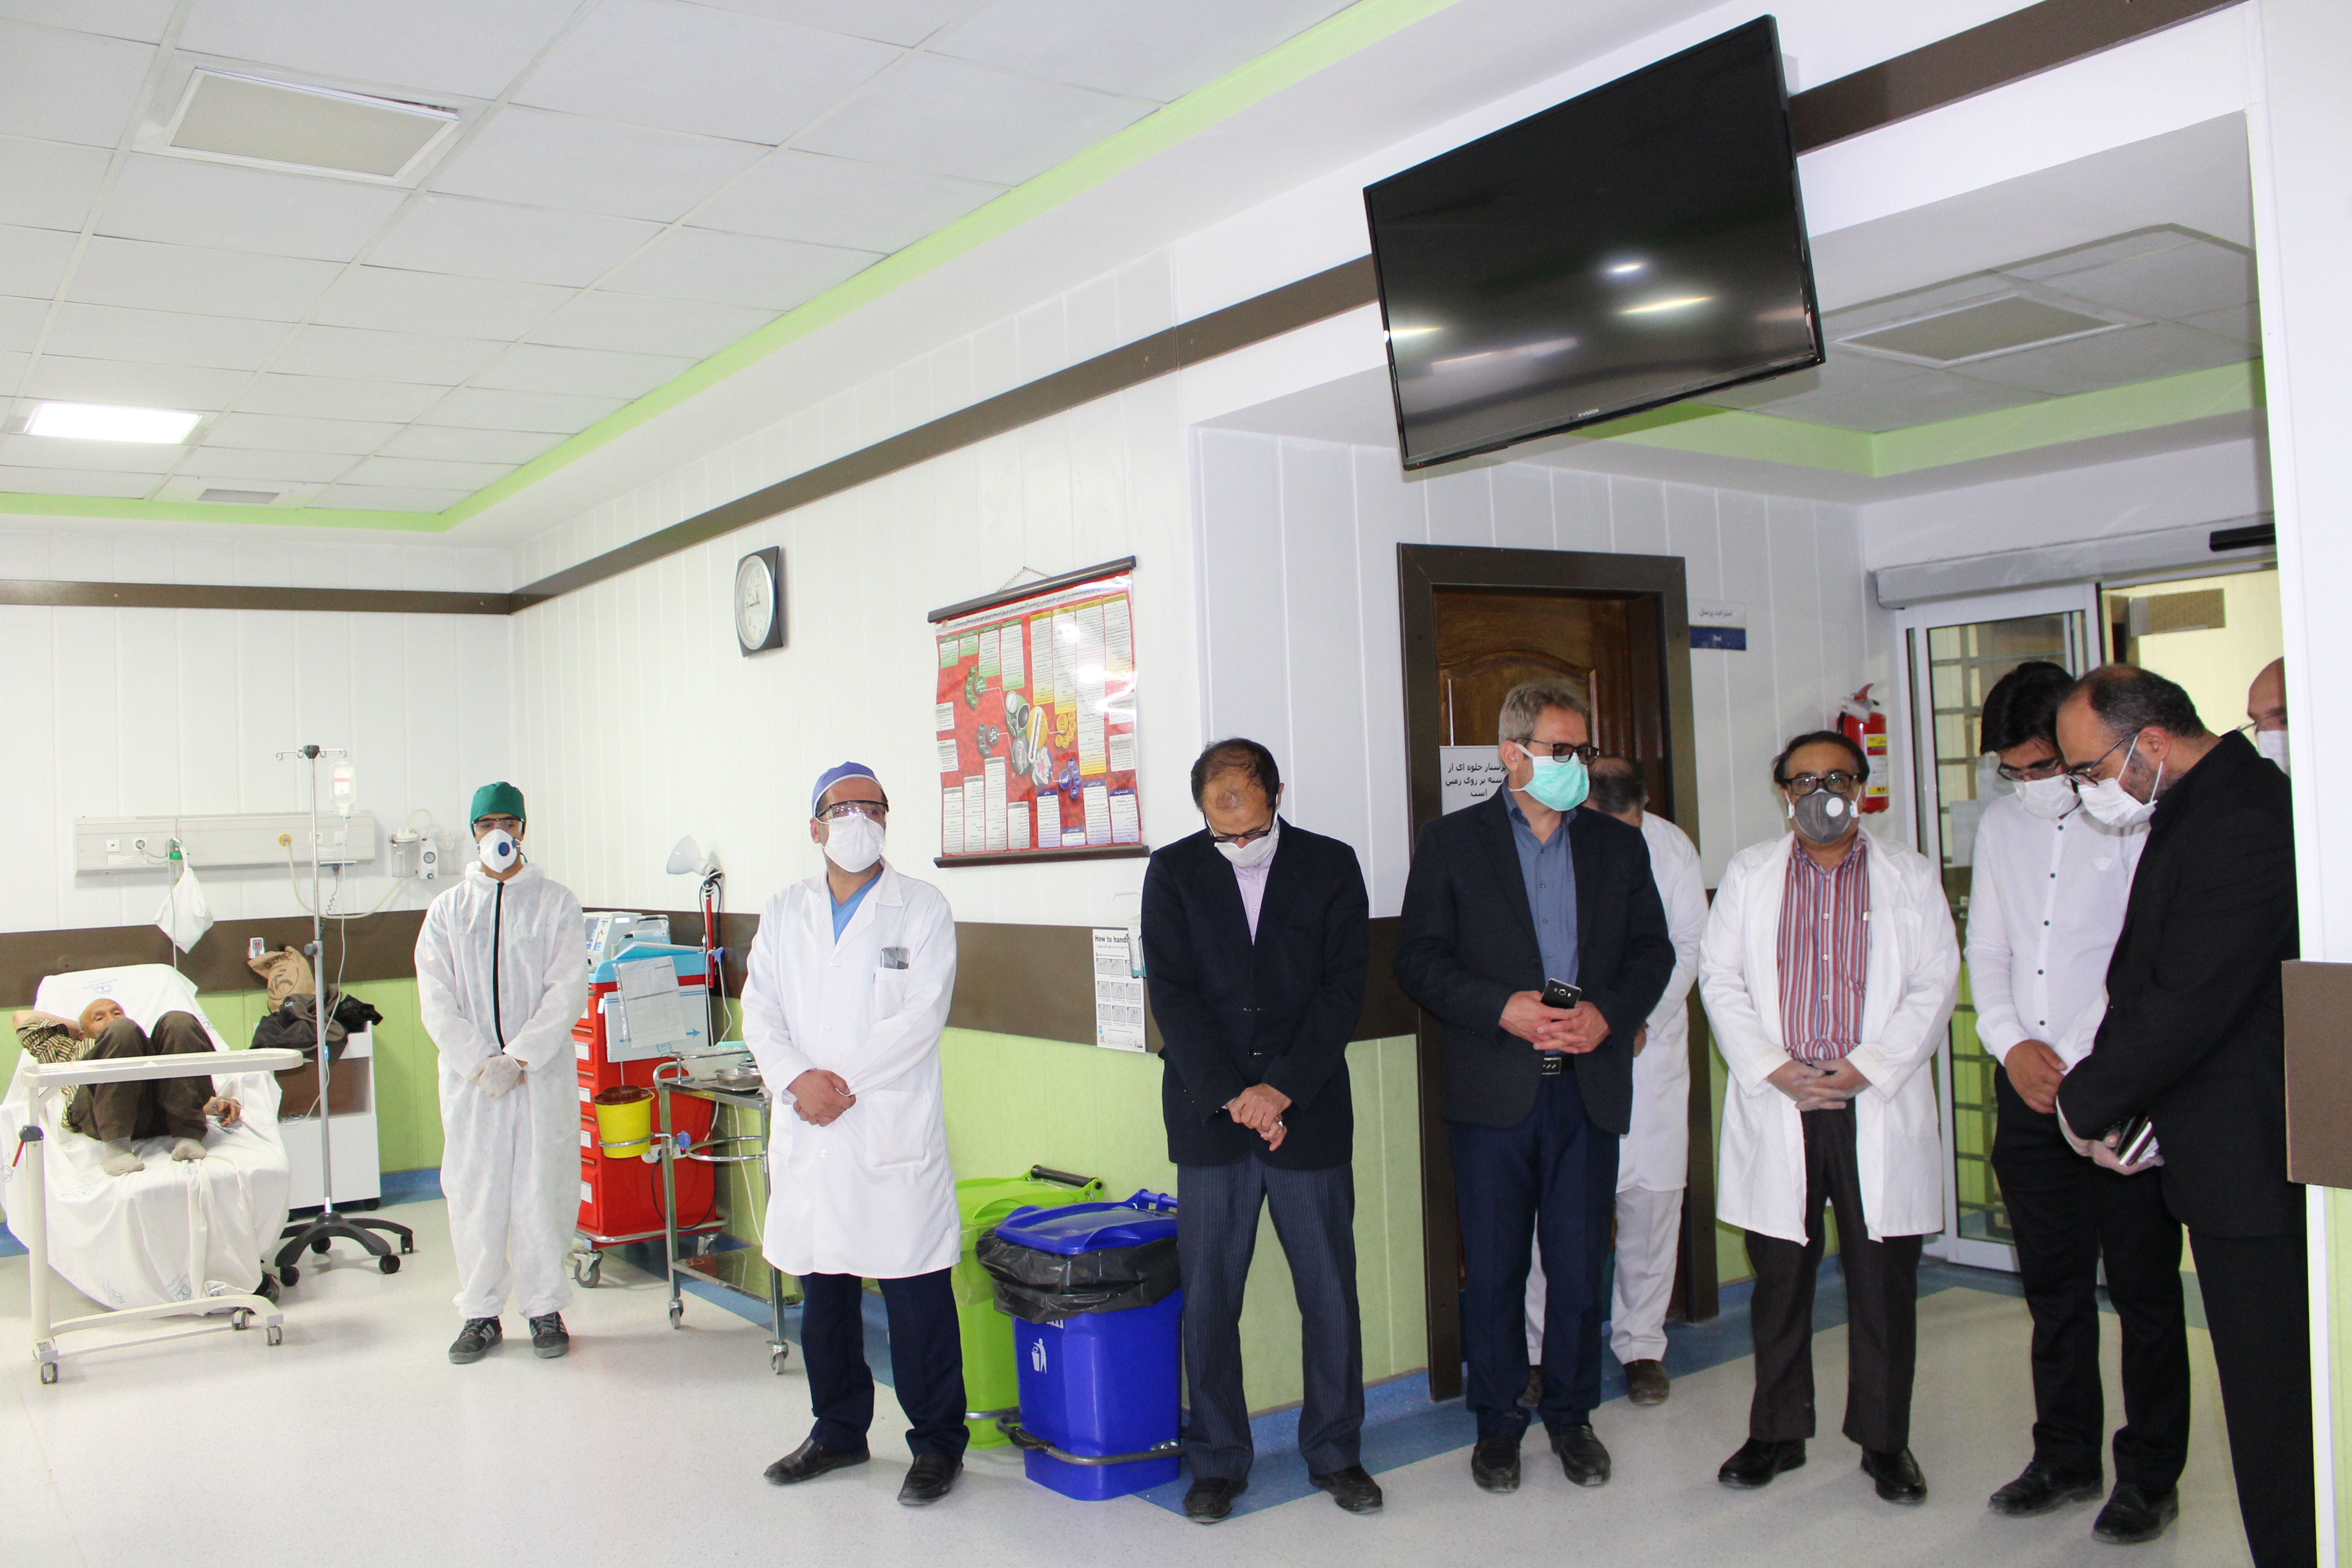 رییس ومدیران وپرسنل بیمارستان با برادر شهید وحید یحیوی دیدار وگفتگو کردند.